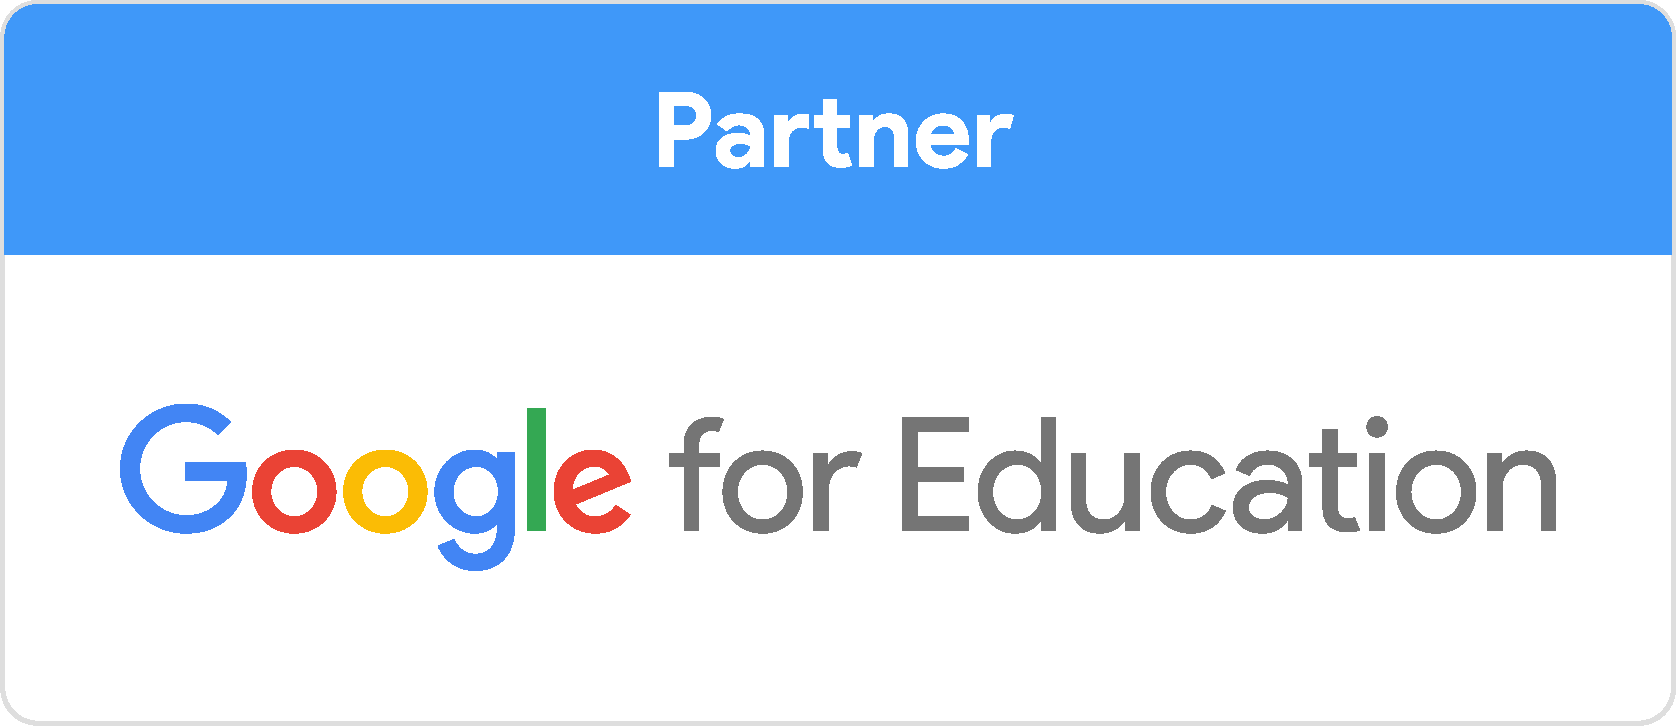 Google for education Partner badge